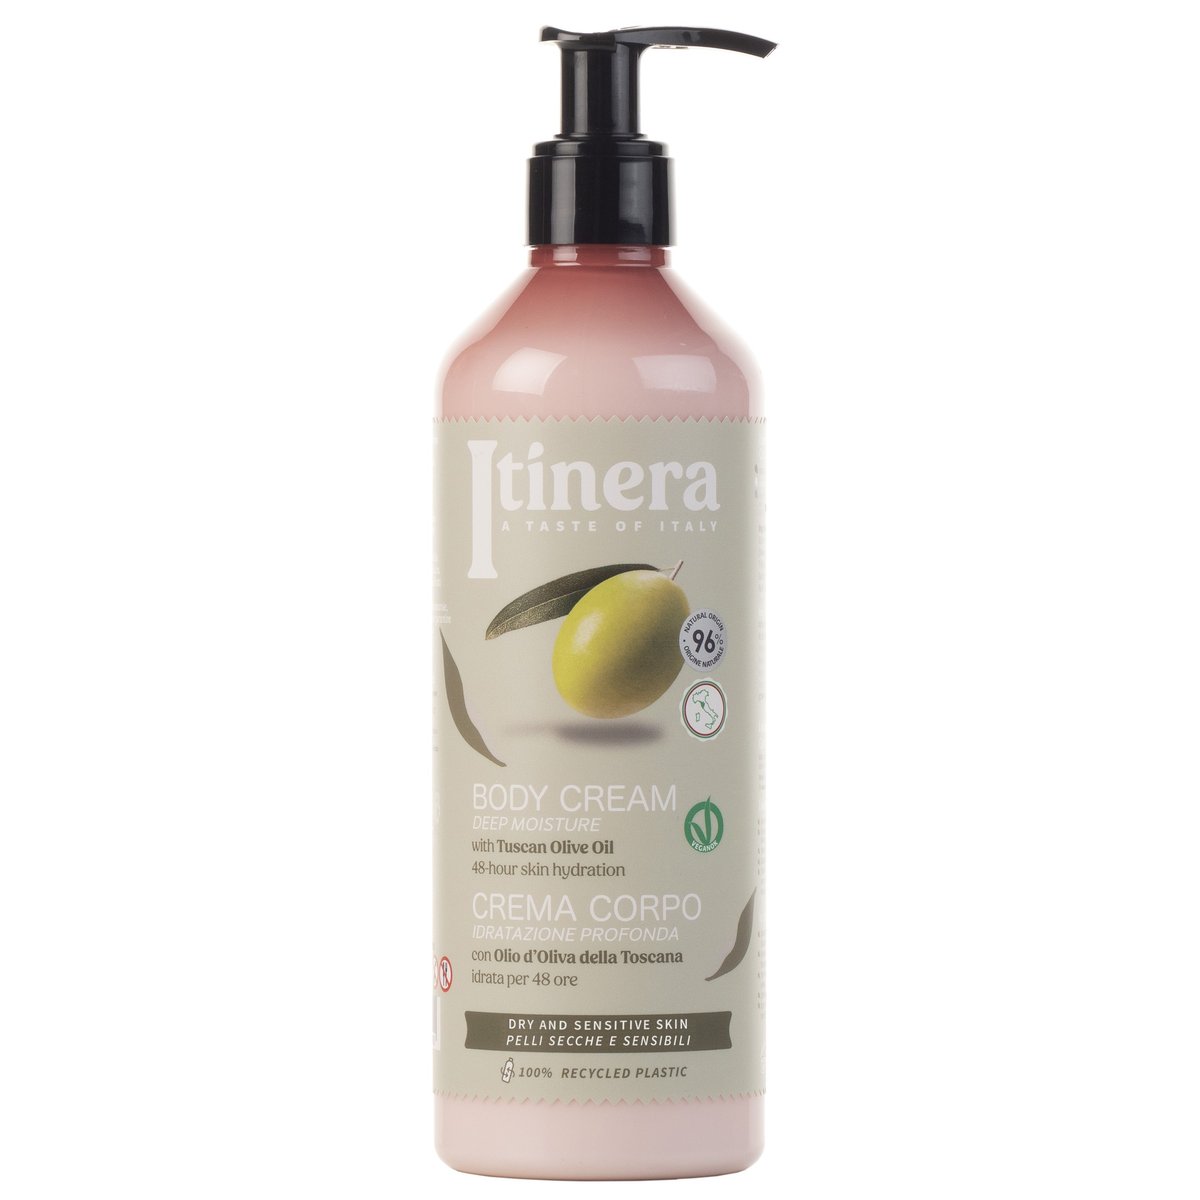 Itinera, Nawilżający balsam do ciała dla skóry suchej i wrażliwej z toskańską oliwą z oliwek, 96% naturalnych składników, 2x370 ml